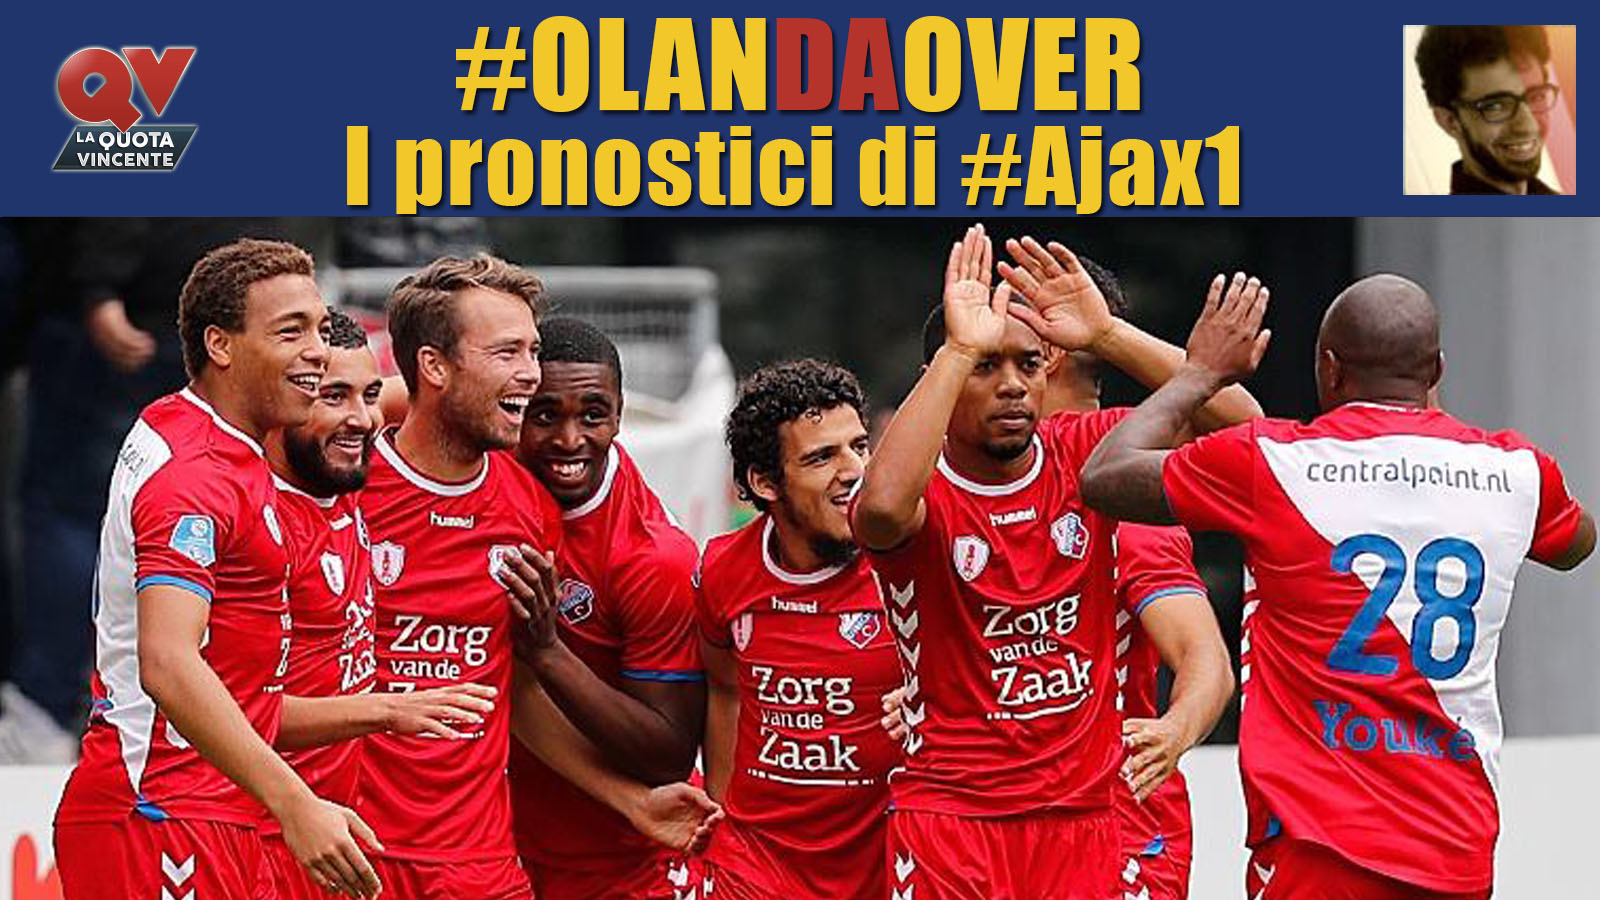 Pronostici Eredivisie giornata 19: tutte le quote e le bollette di #OlanDaOver il blog di #Ajax1!